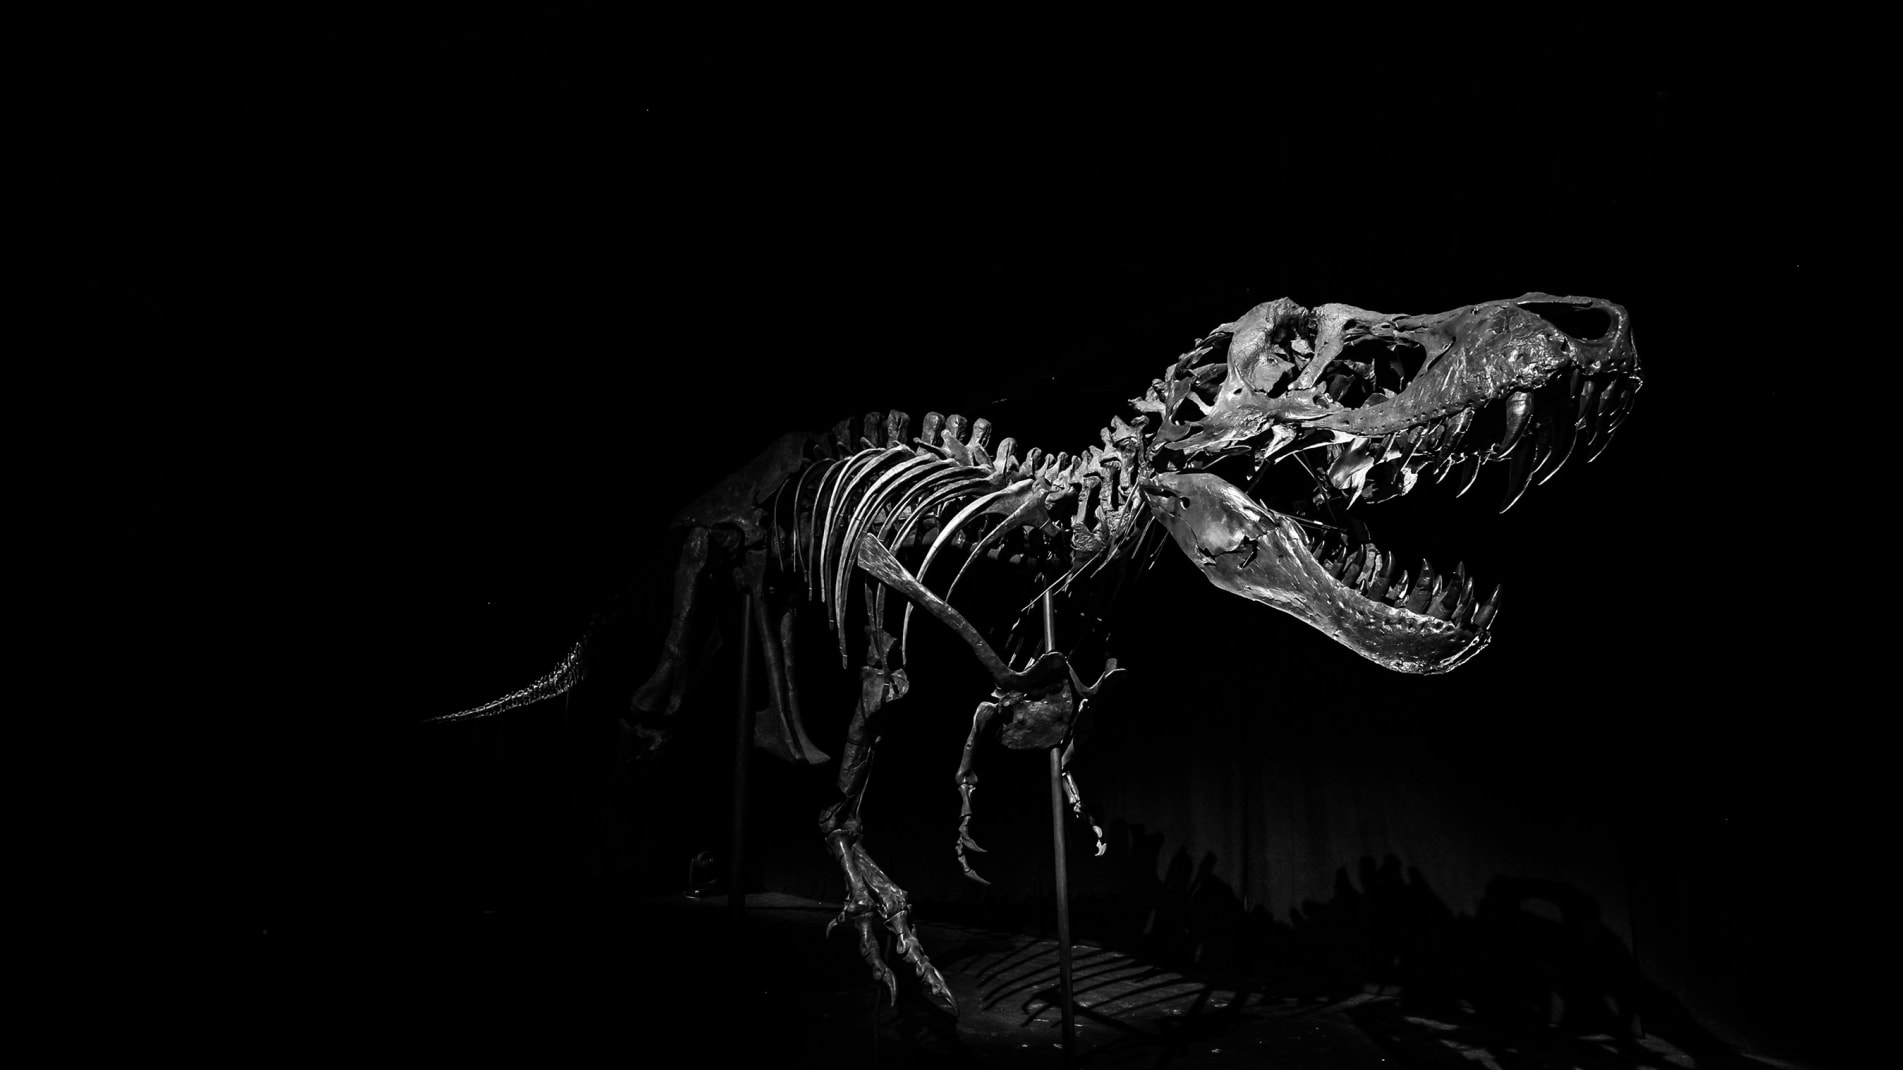 Stan, el fósil de tiranosaurio rex de 67 millones de años, será una atracción estelar en el Museo de Historia Natural de Abu Dabi, cuya inauguración se espera para 2025.